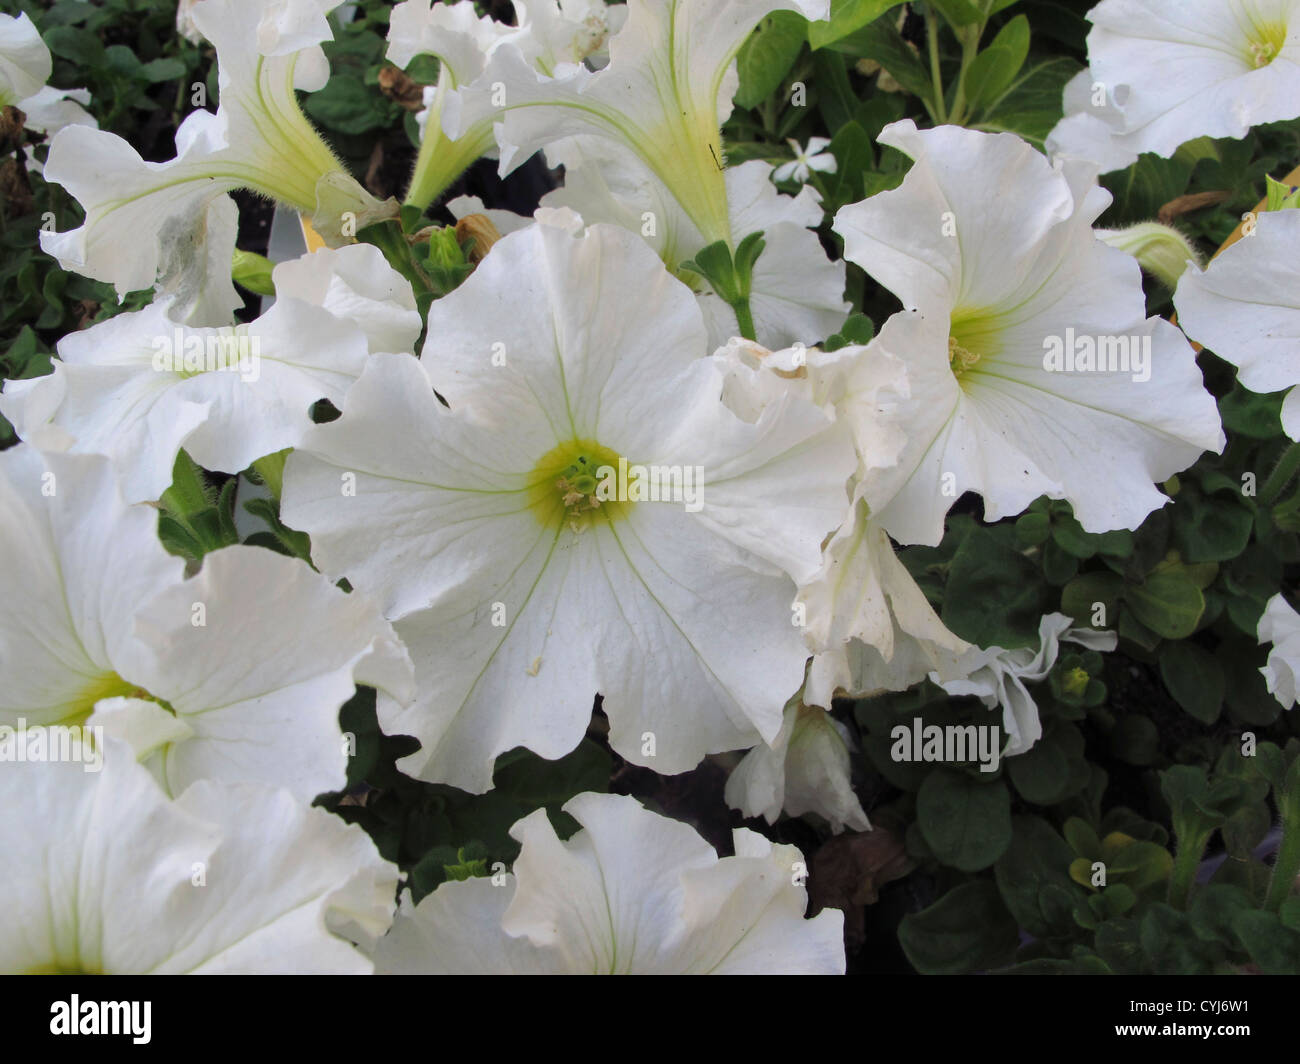 flowering plant Stock Photo